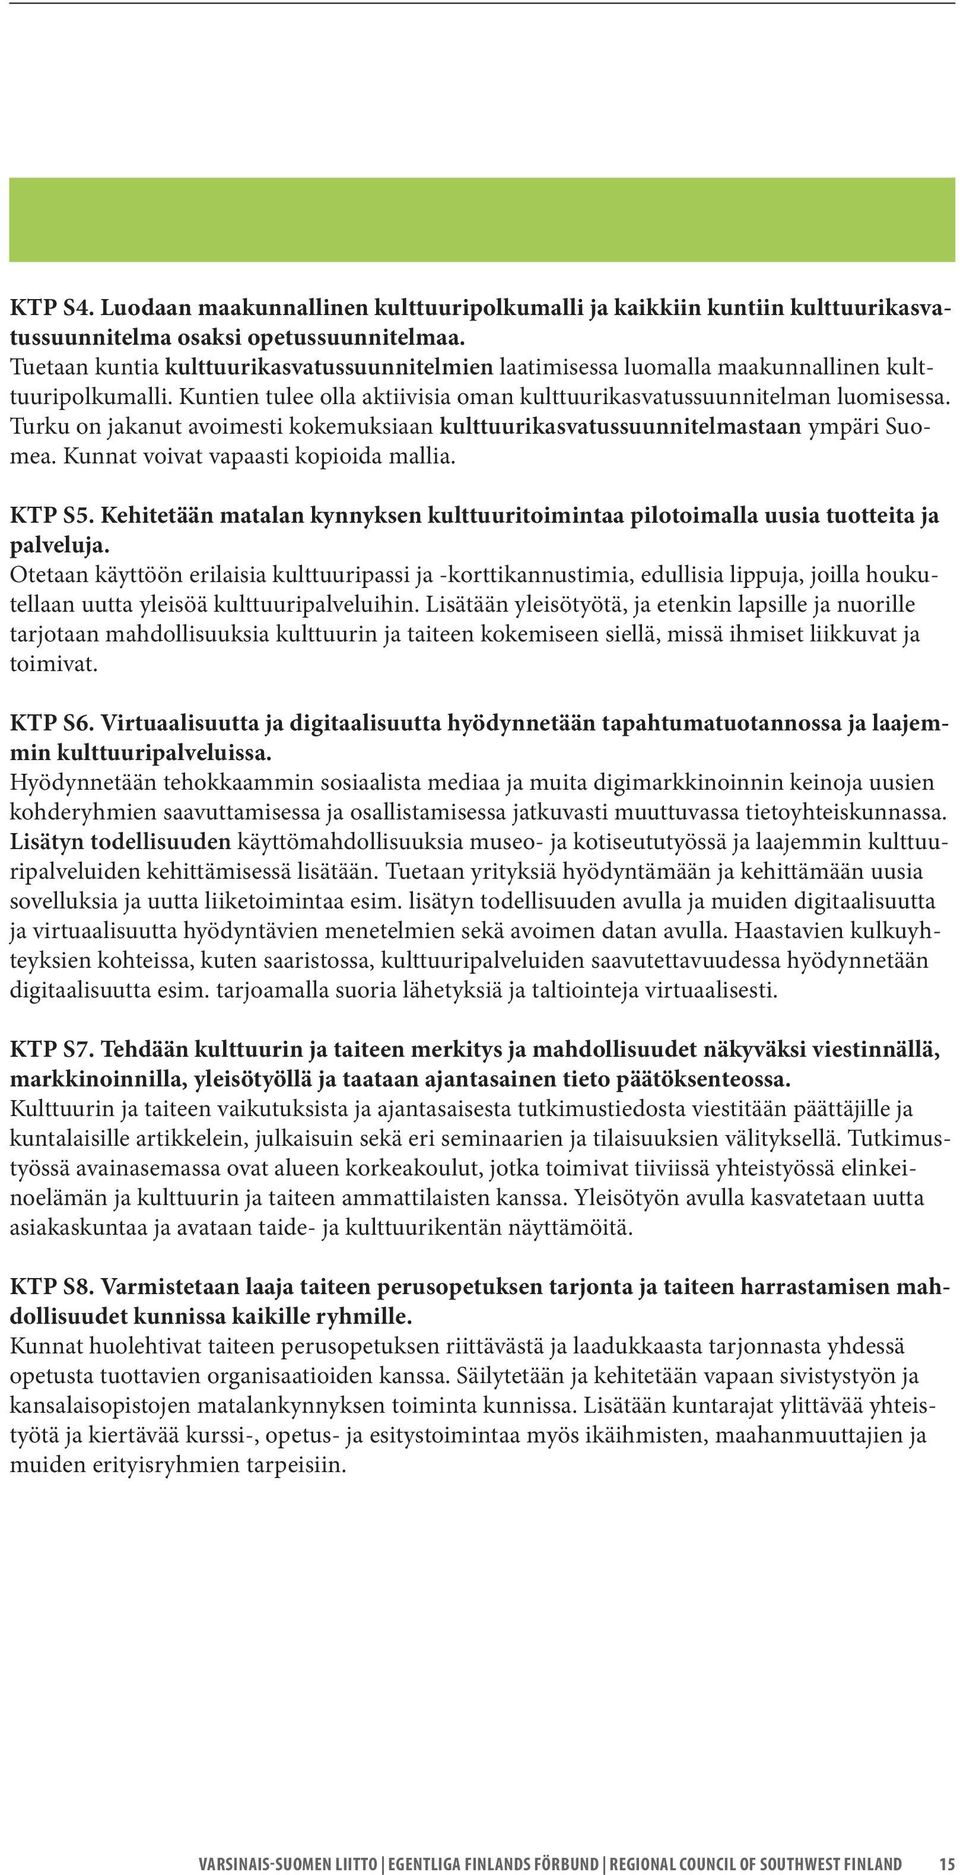 Turku on jakanut avoimesti kokemuksiaan kulttuurikasvatussuunnitelmastaan ympäri Suomea. Kunnat voivat vapaasti kopioida mallia. KTP S5.